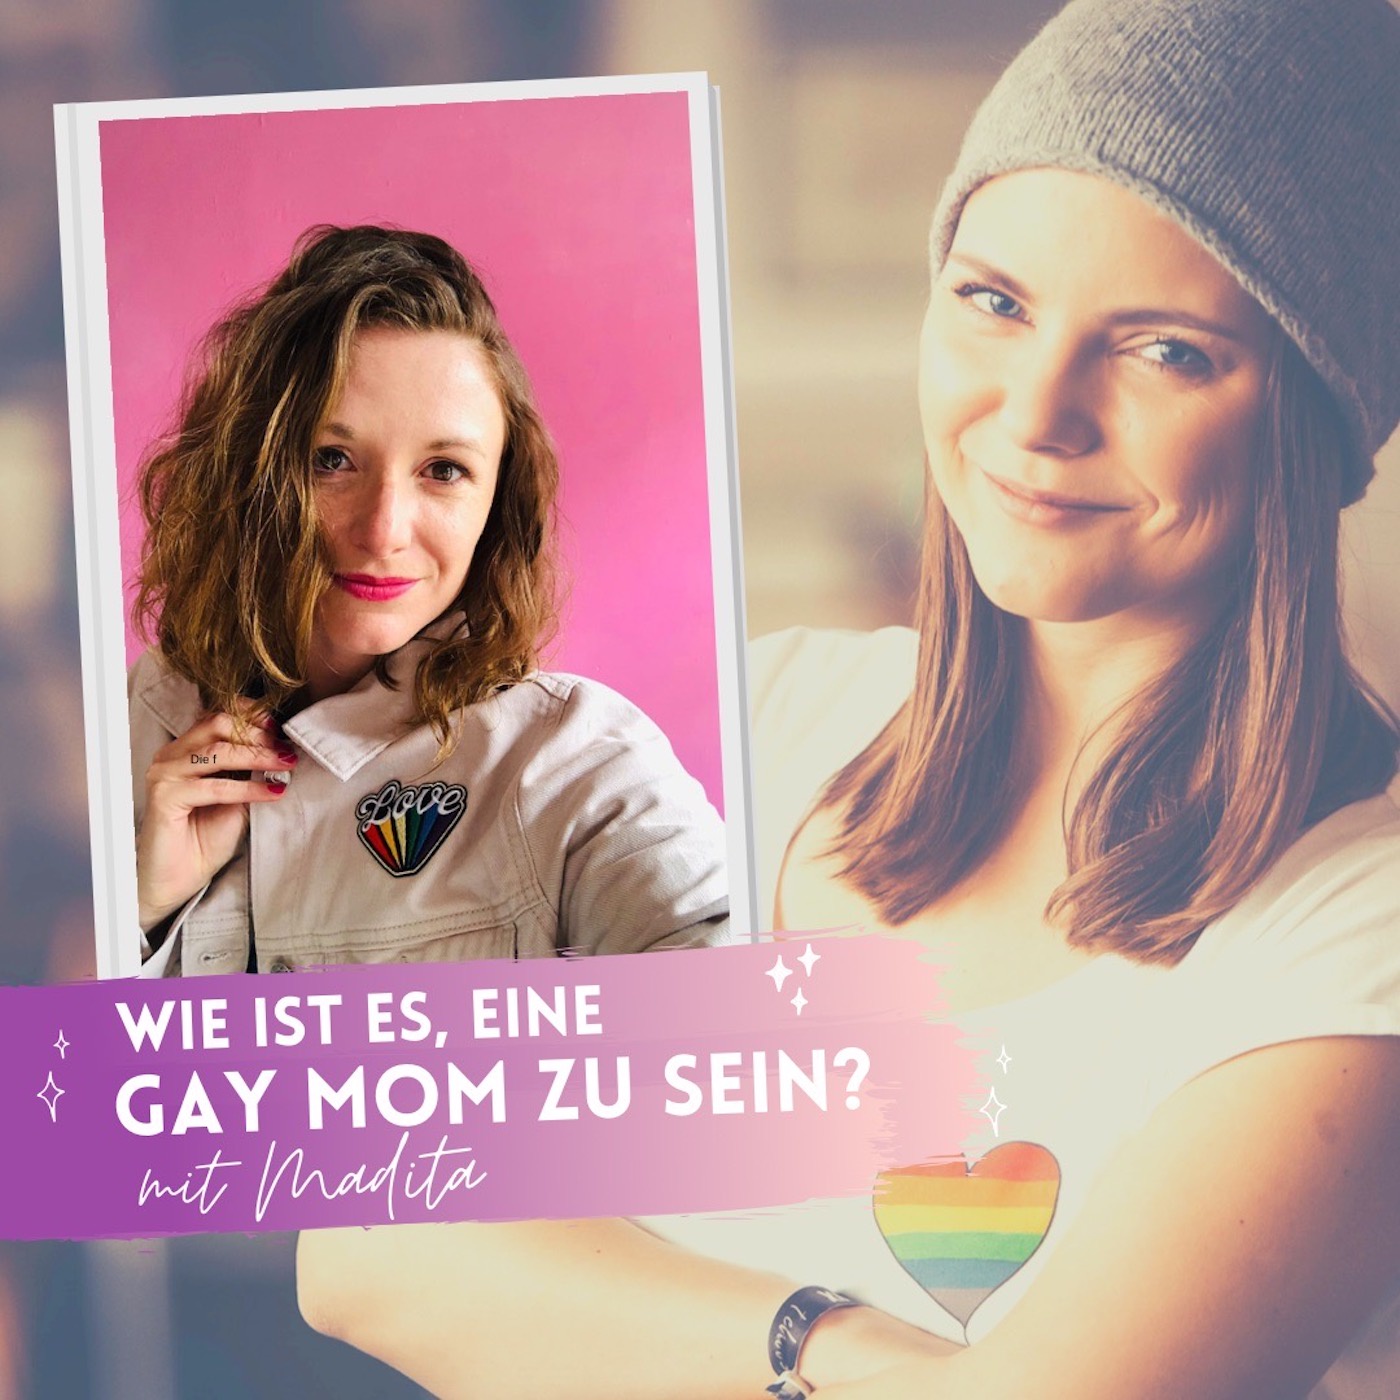 Wie ist es, eine gay mom zu sein?